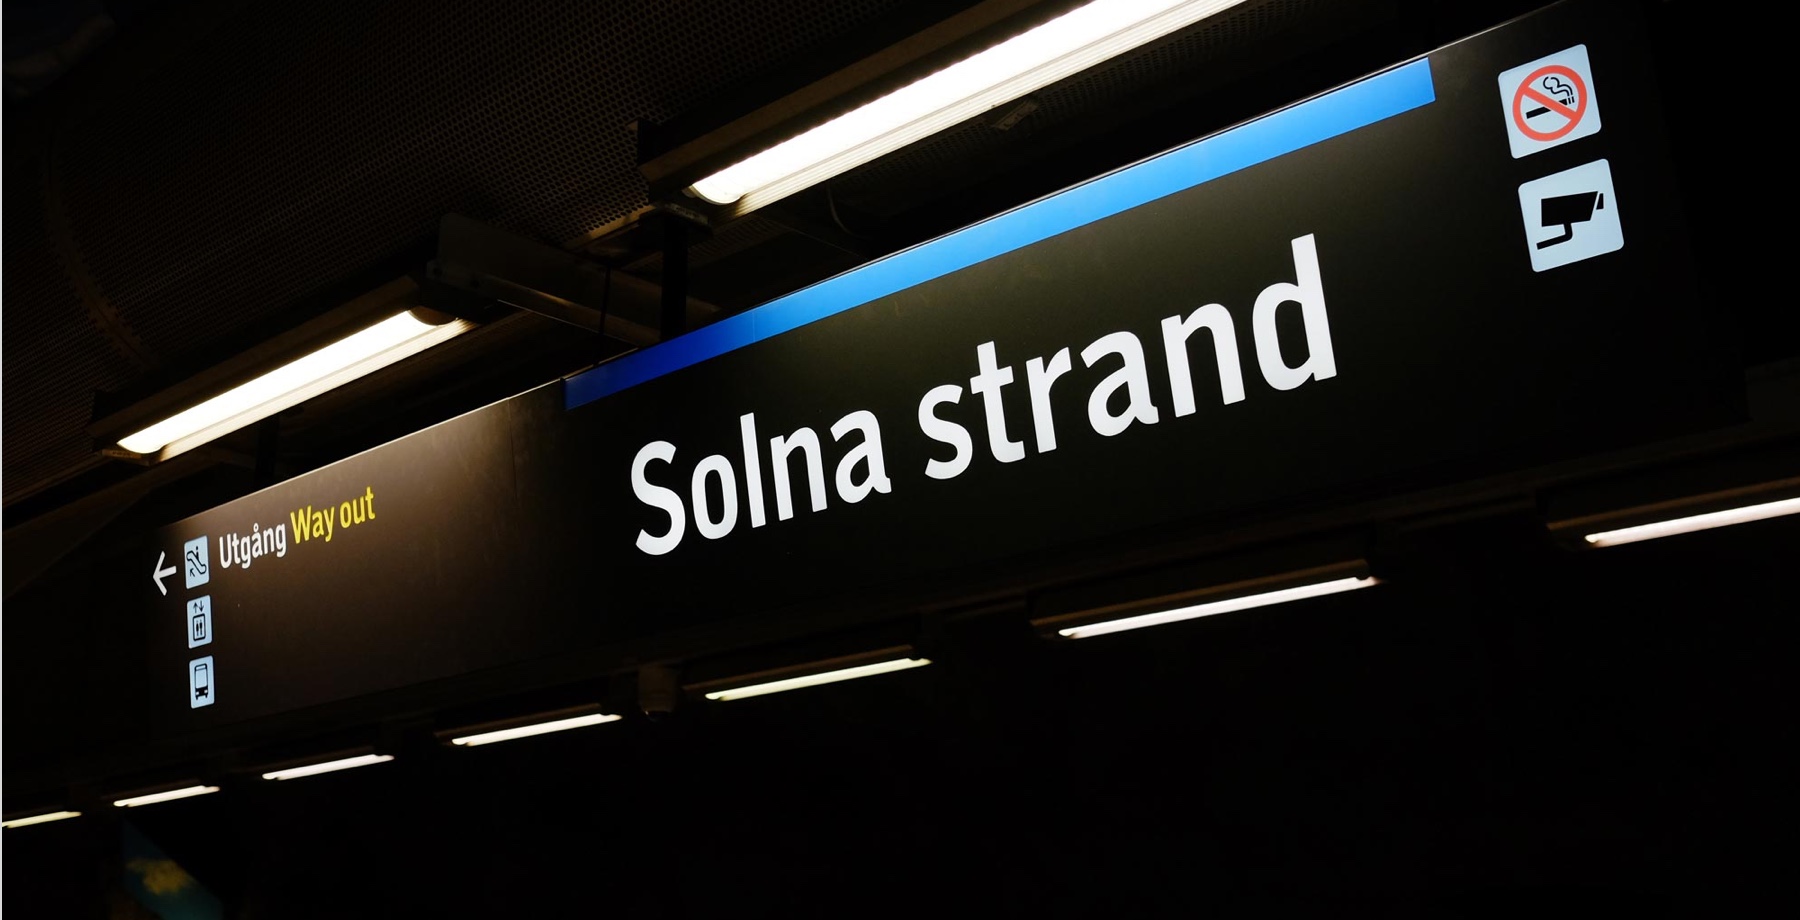 Solna Strand station